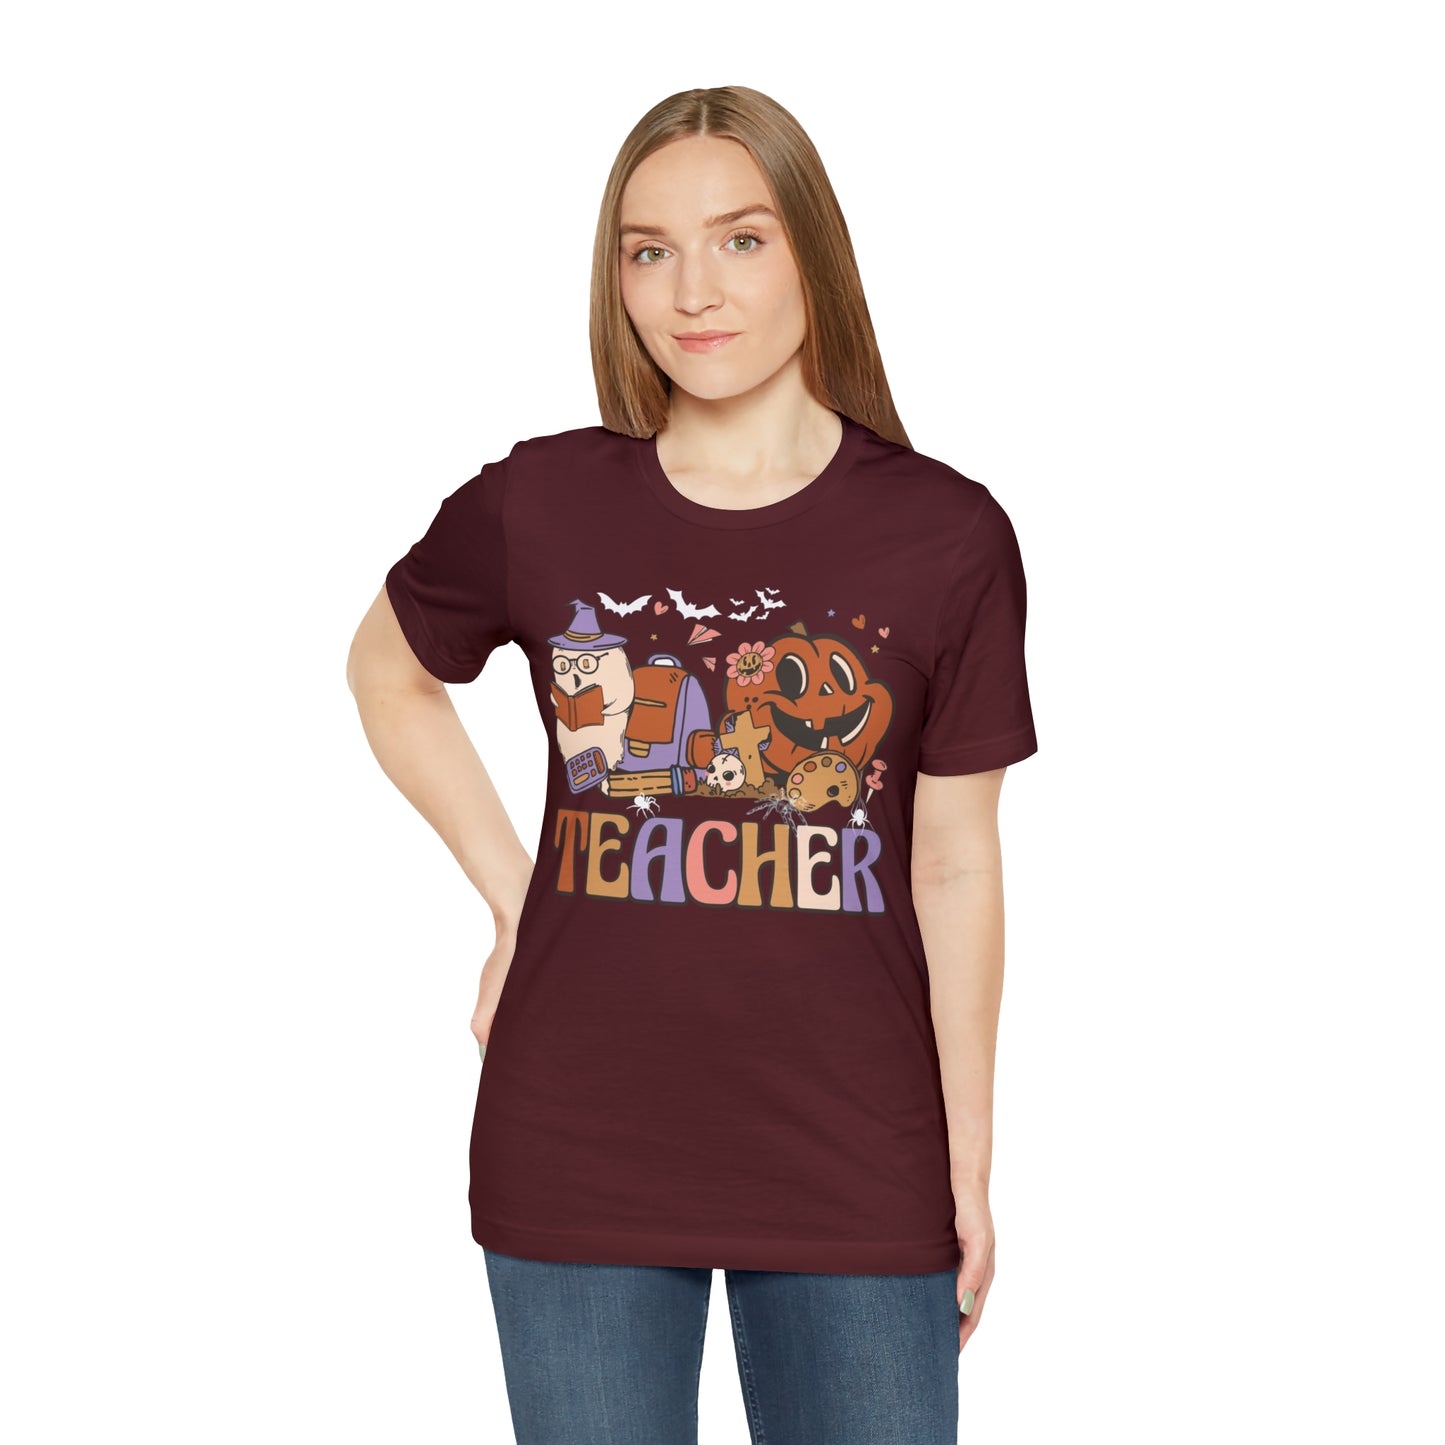 Teacher Shirt, Trick Or Teach Shirt, Spooky Teacher, Teacher Halloween Shirt, Teaching My Boos, Fall Teacher Shirt, T677